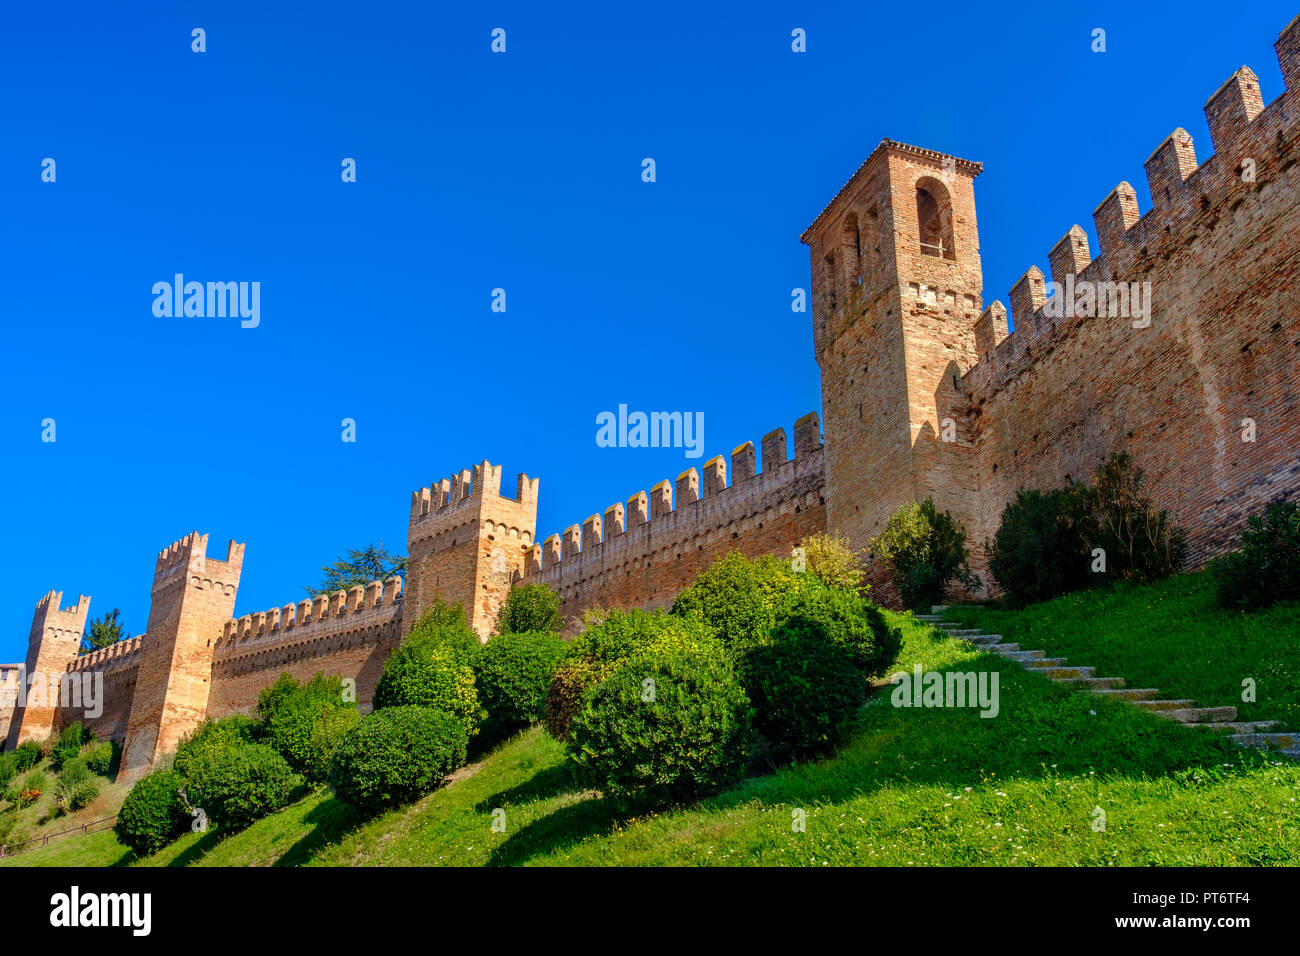 castle walls background copyspace - Gradara - Pesaro - Italy Stock Photo